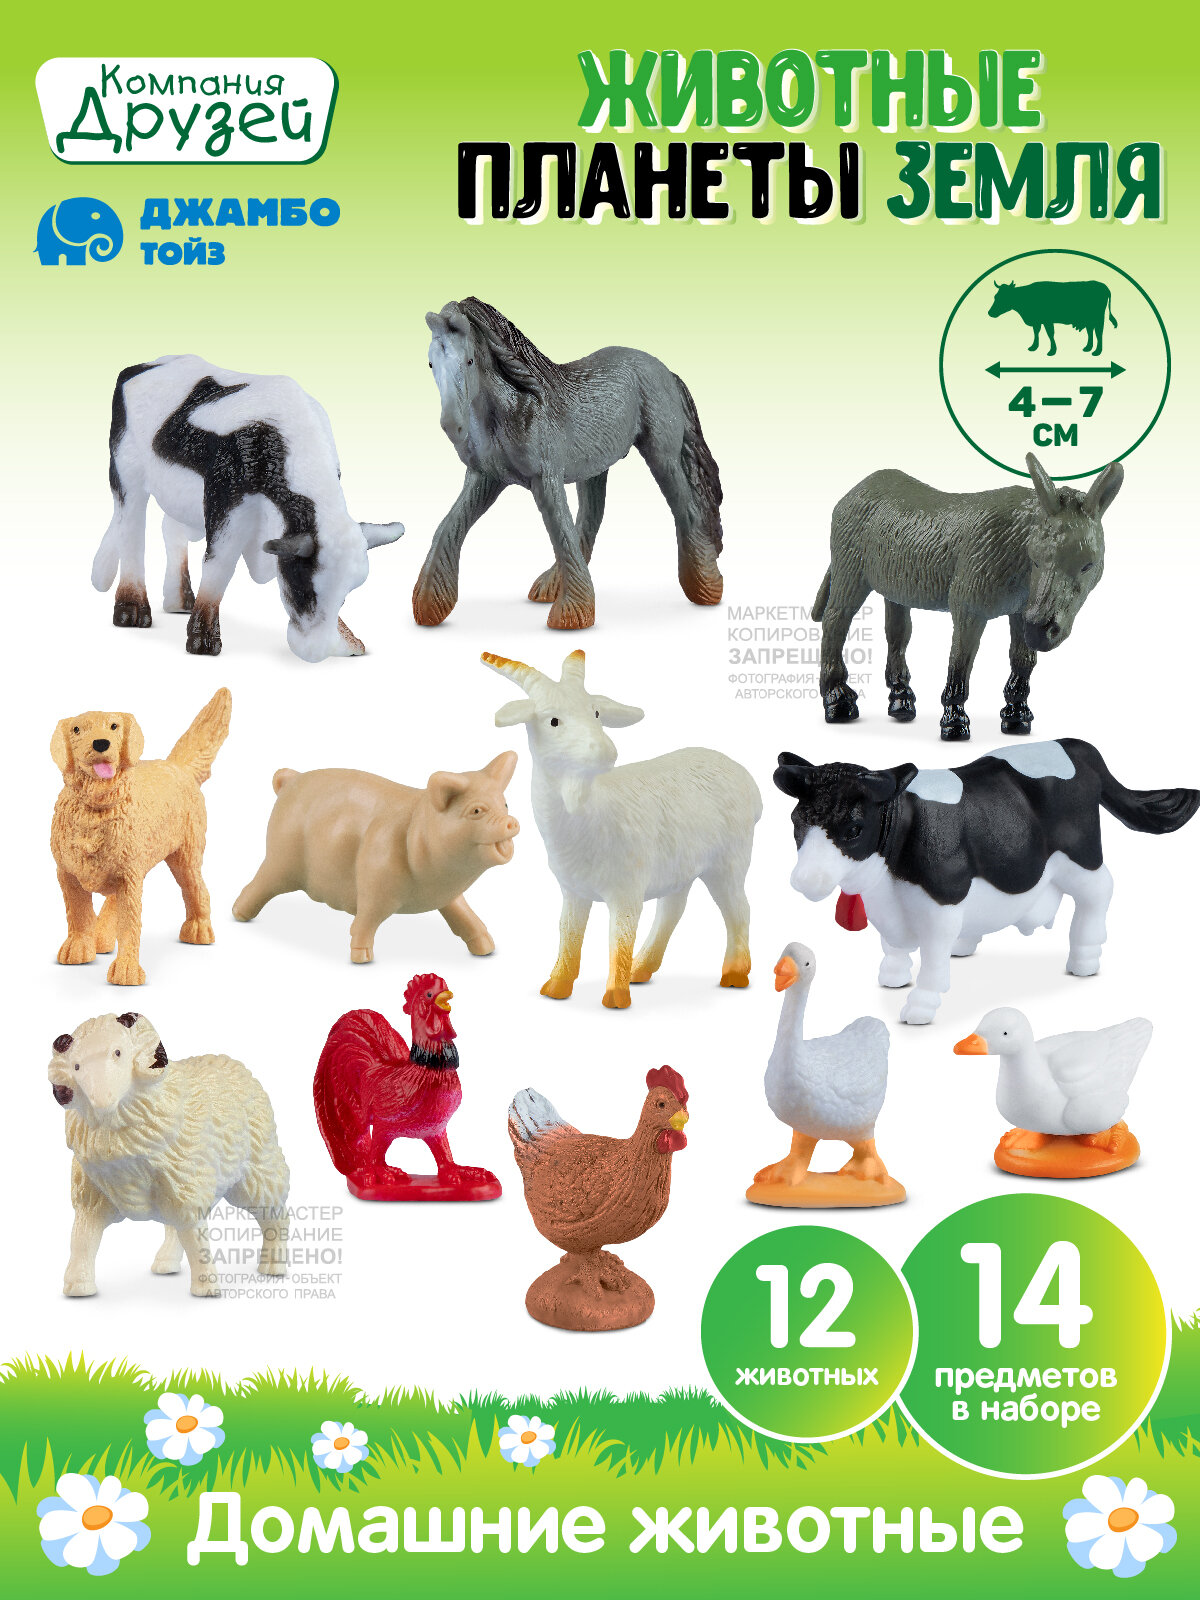 Игровой набор "Домашние животные" ТМ Компания Друзей, 14 предметов, JB0211744